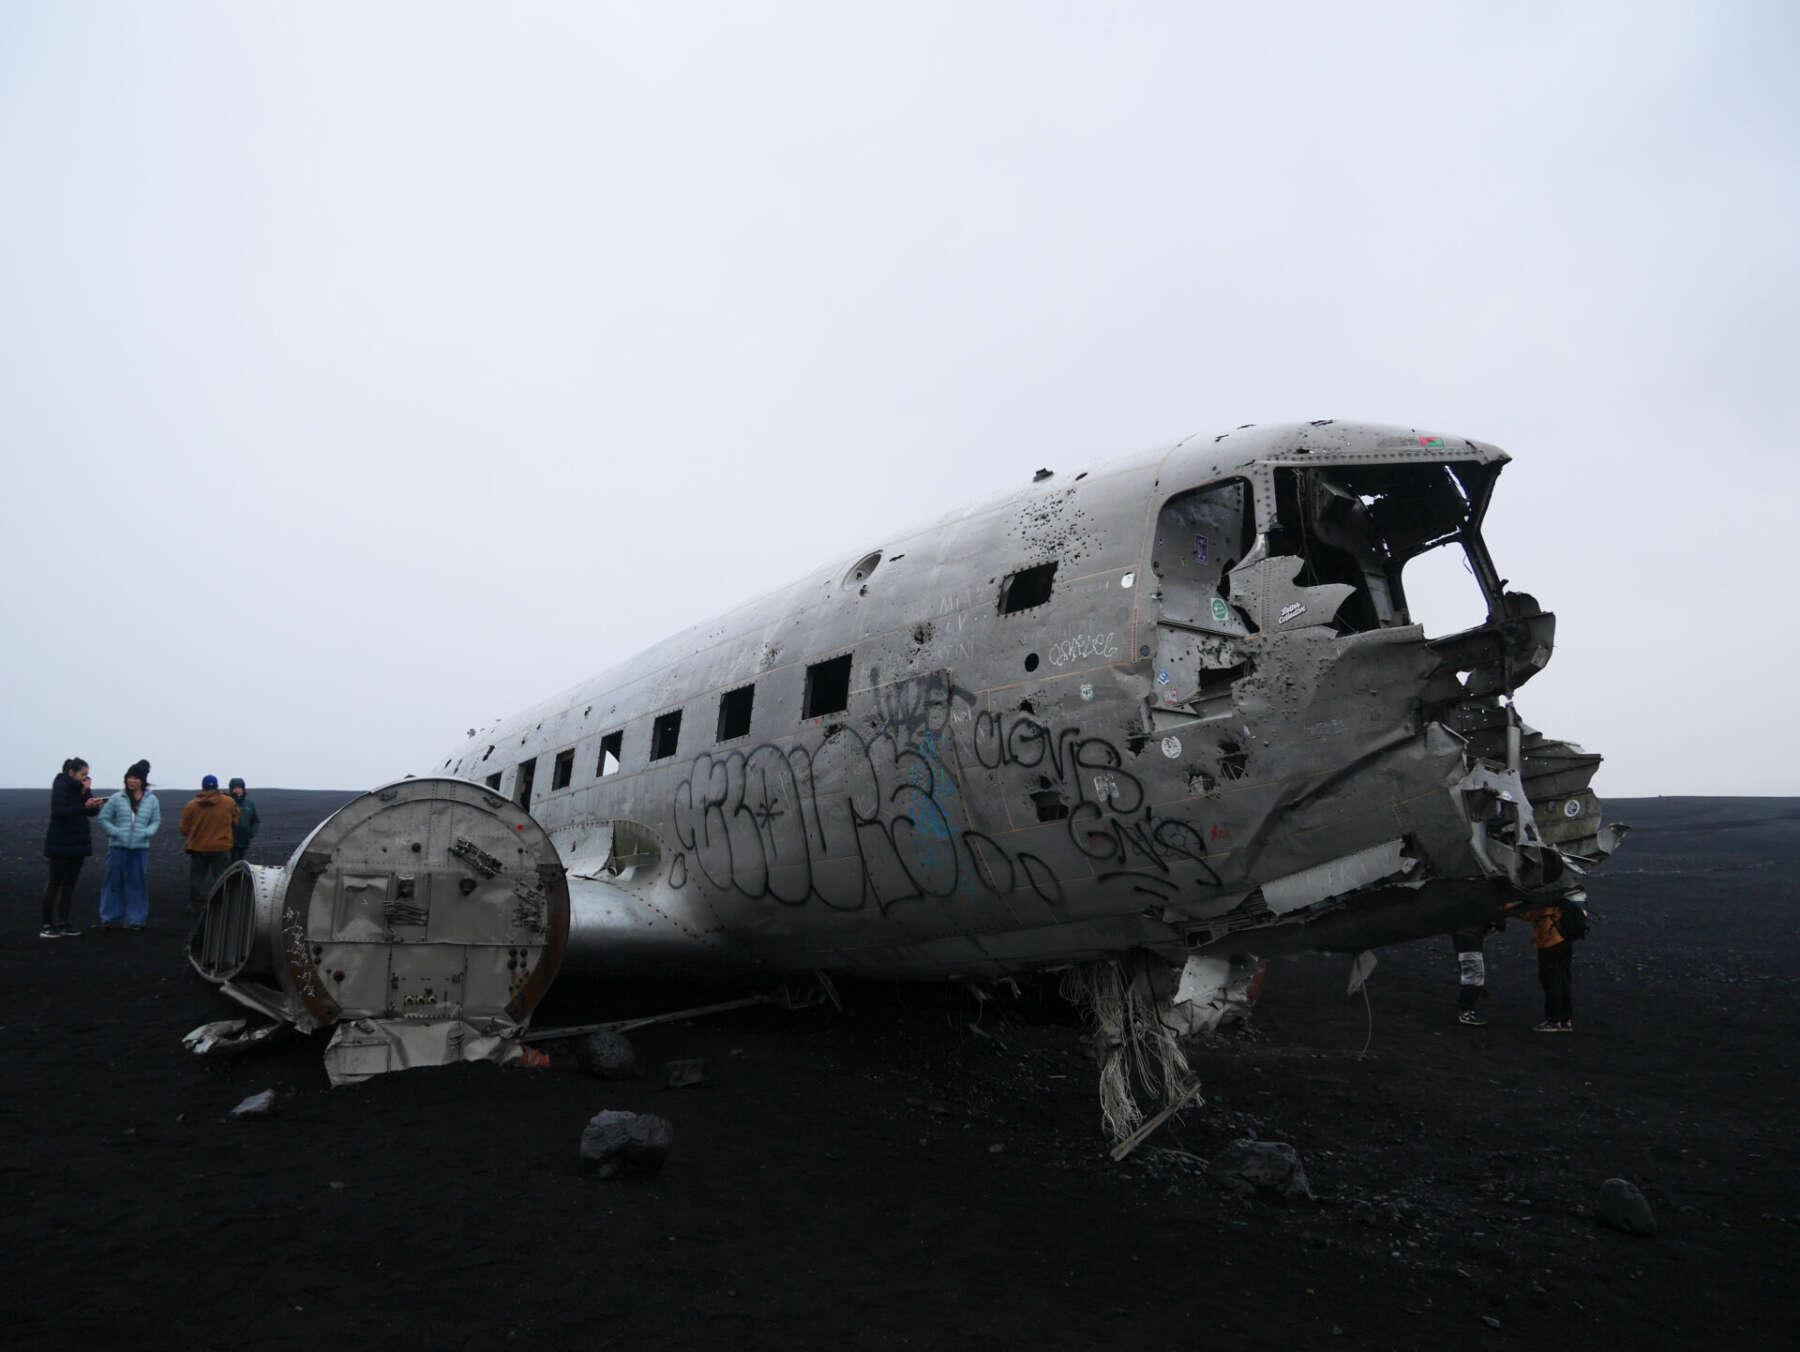 ซากเครื่องบินในไอซ์แลนด์ (The plane wreck in Iceland)